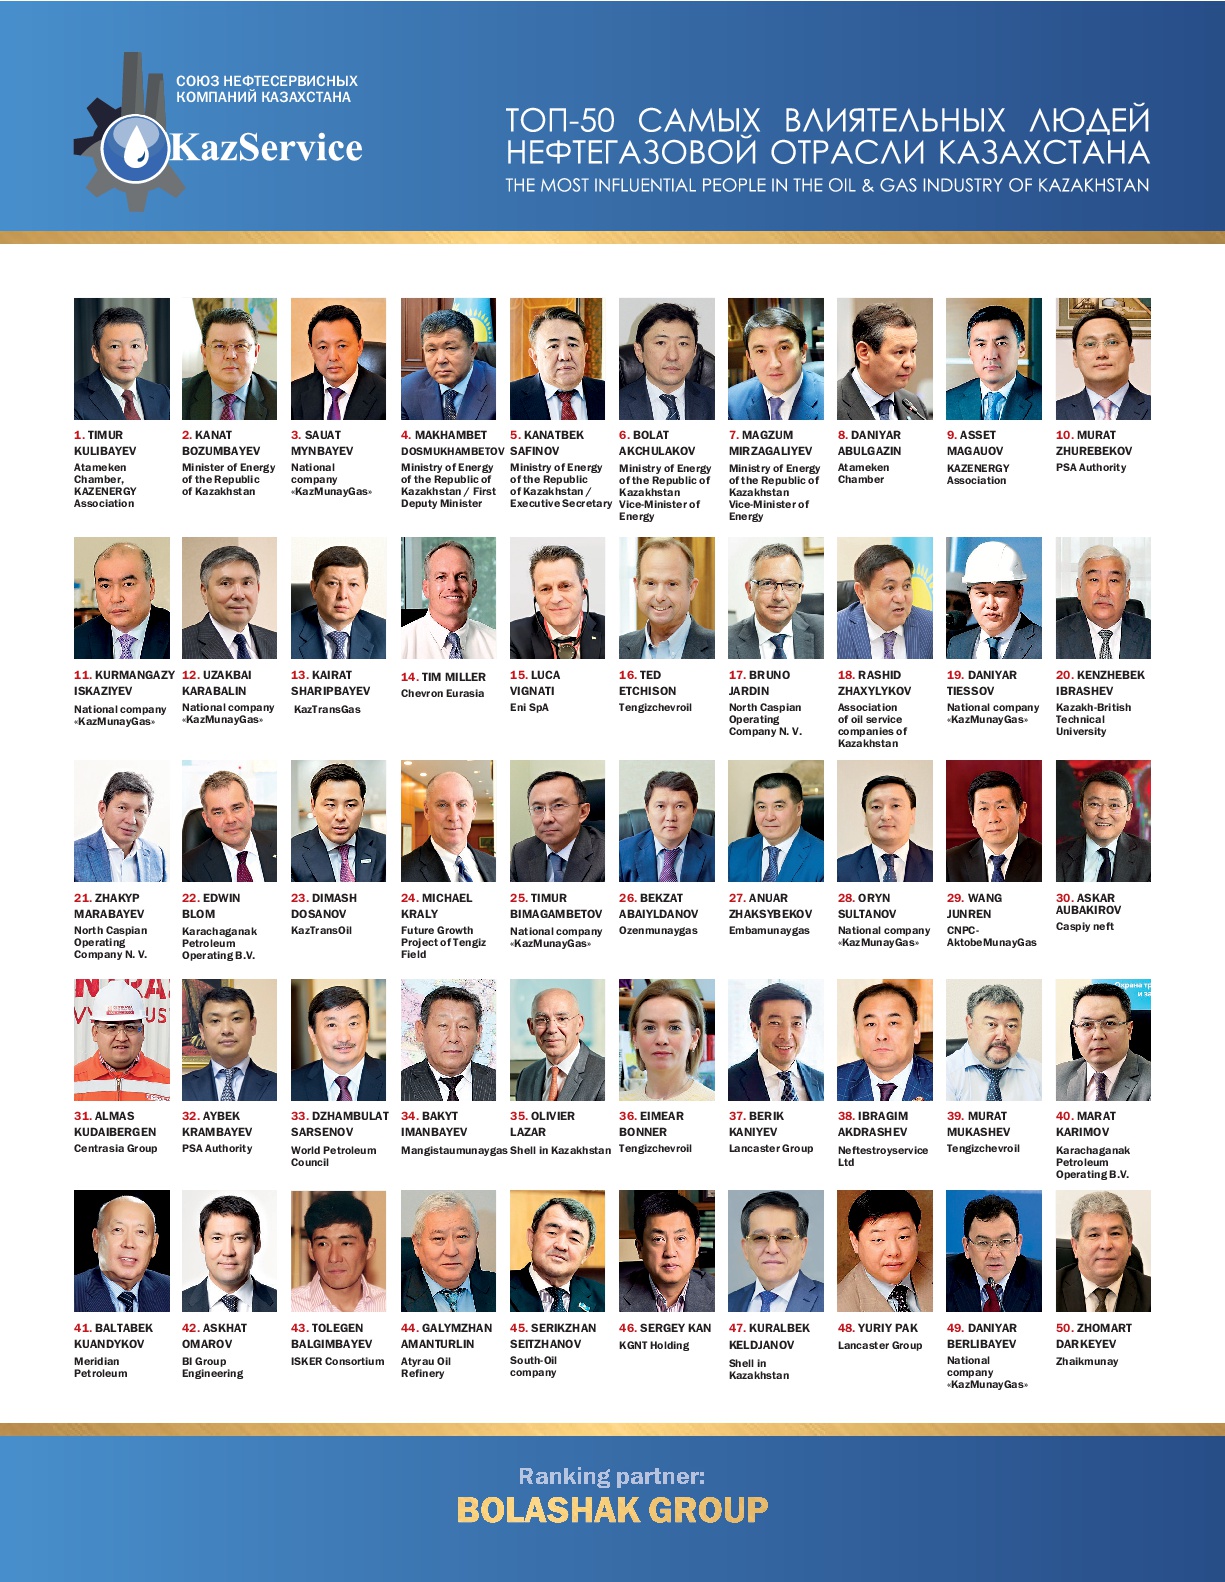 Определен ТОП-50 самых влиятельных людей нефтегазовой отрасли Казахстана